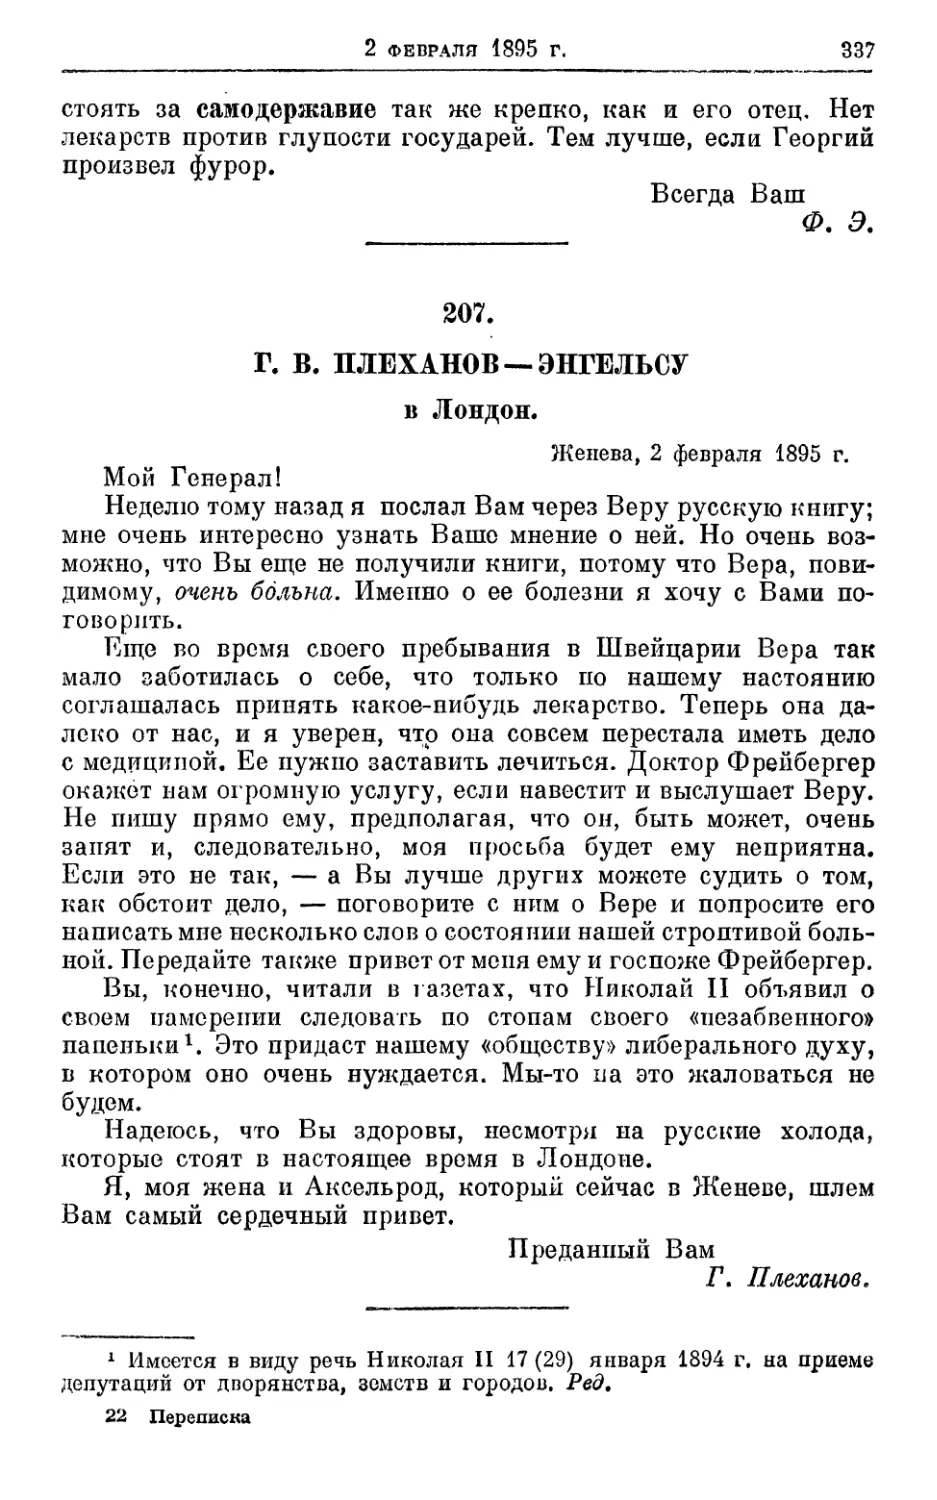 207. Плеханов — Энгельсу, 2 февраля 1895г